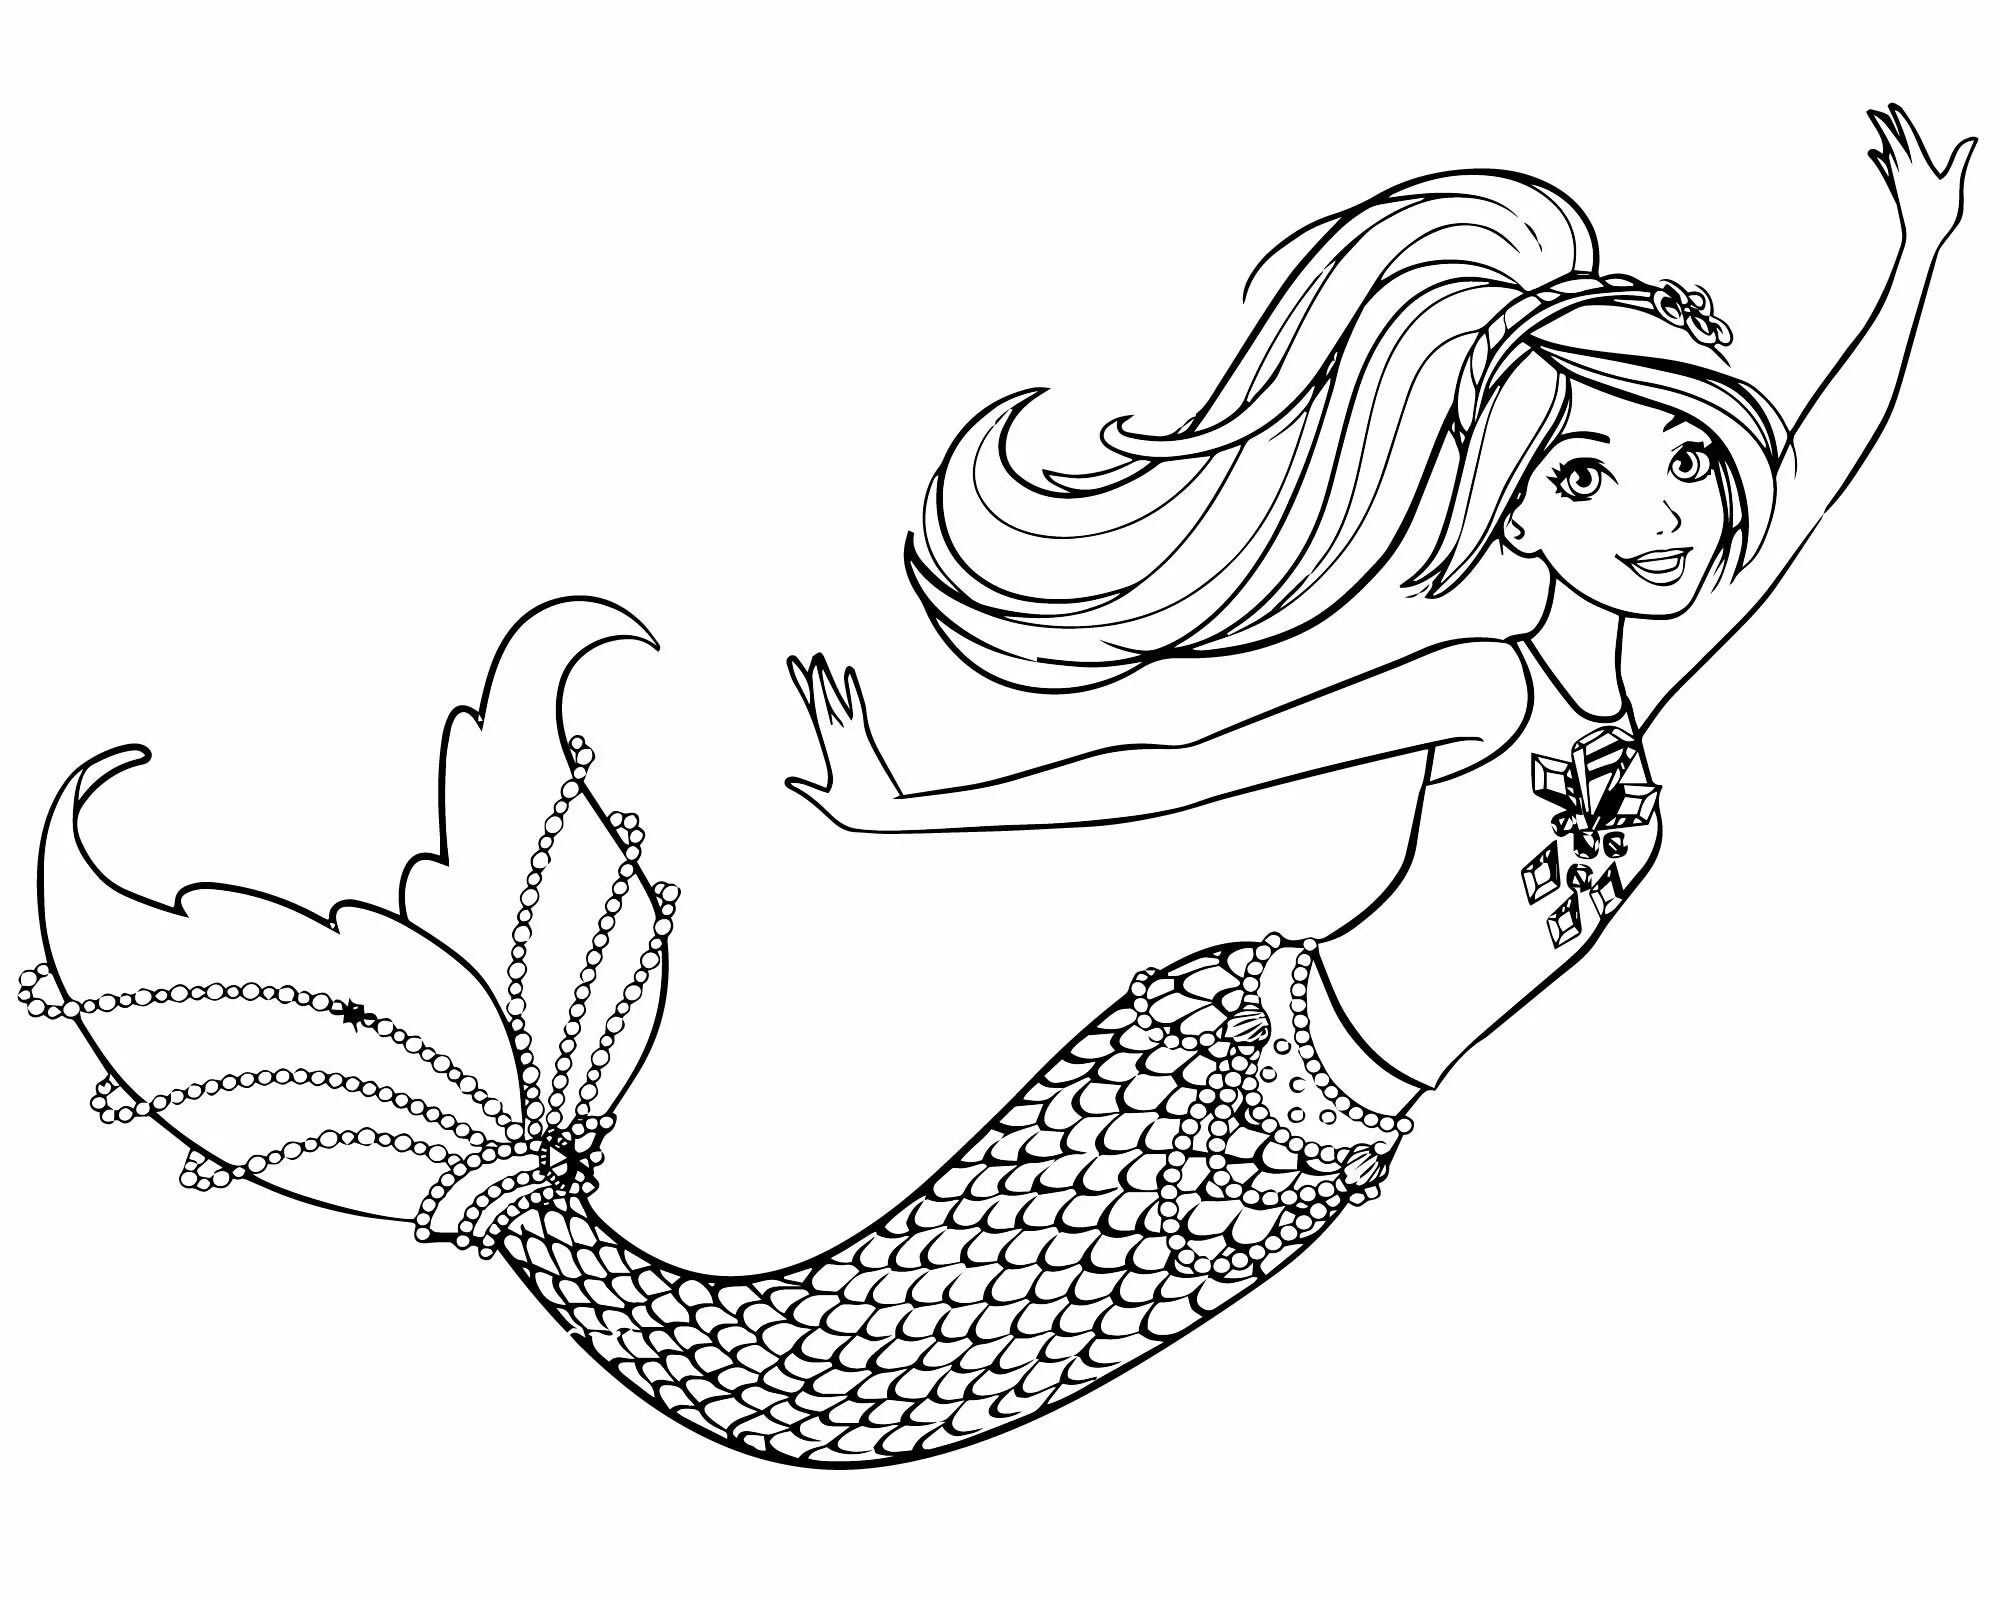 Mermaid queen #2